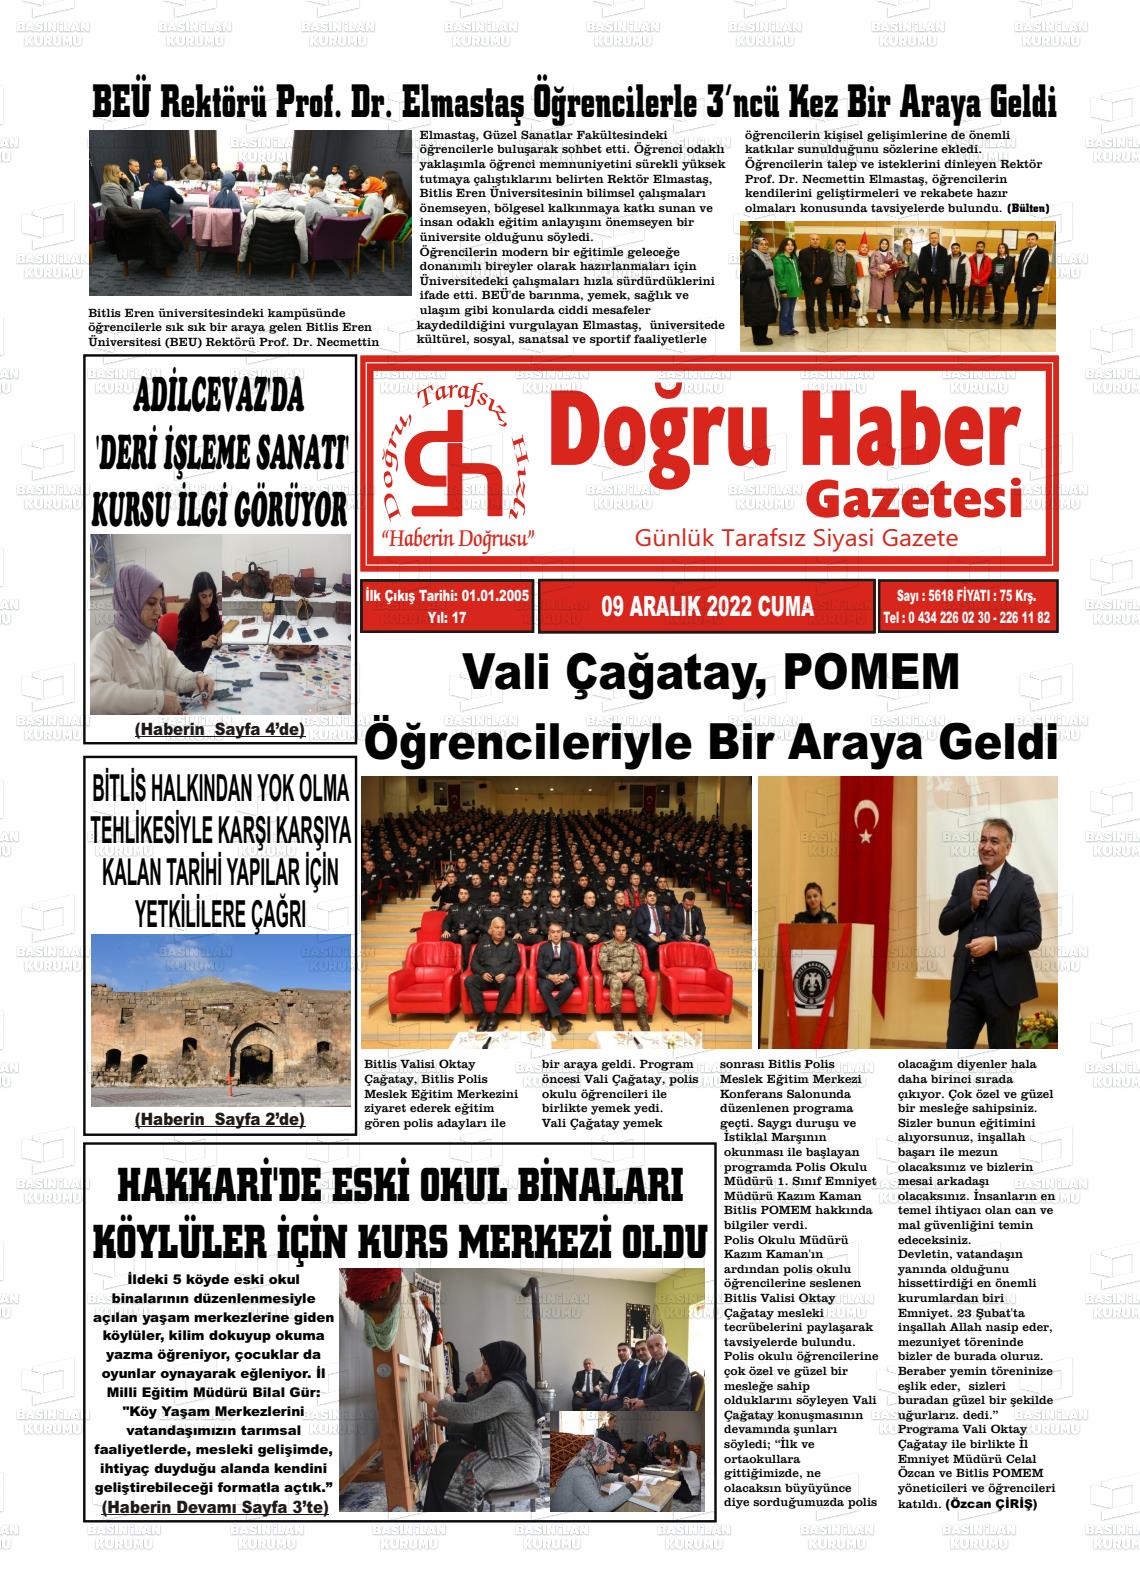 09 Aralık 2022 Doğru Haber Gazete Manşeti